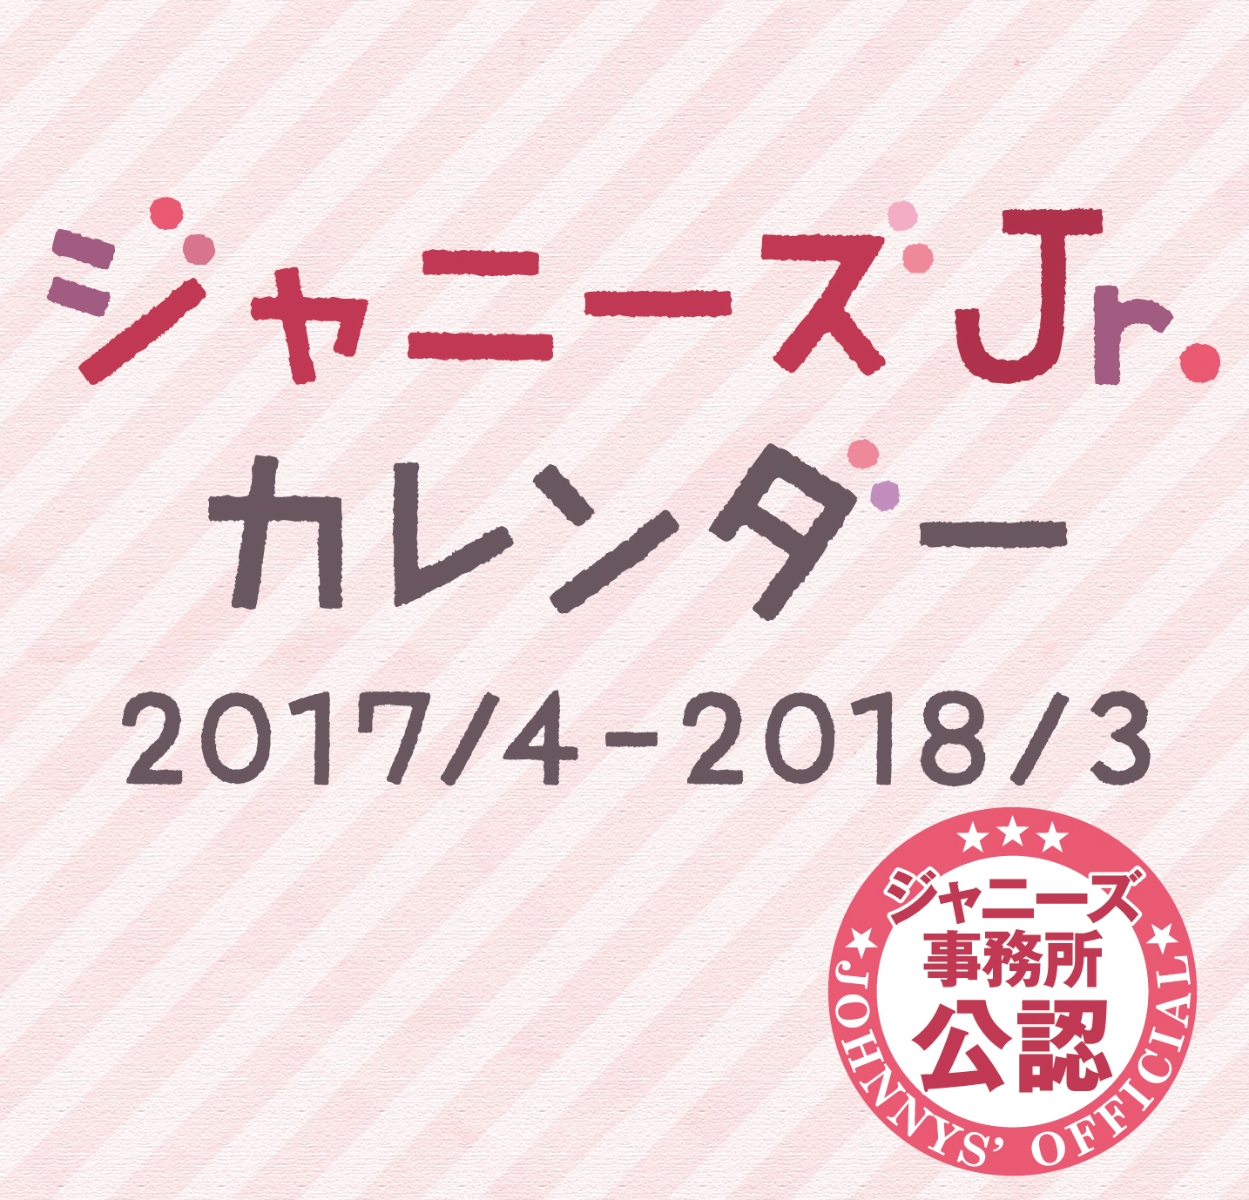 楽天ブックス ジャニーズjr Calendar 2017 4 2018 3